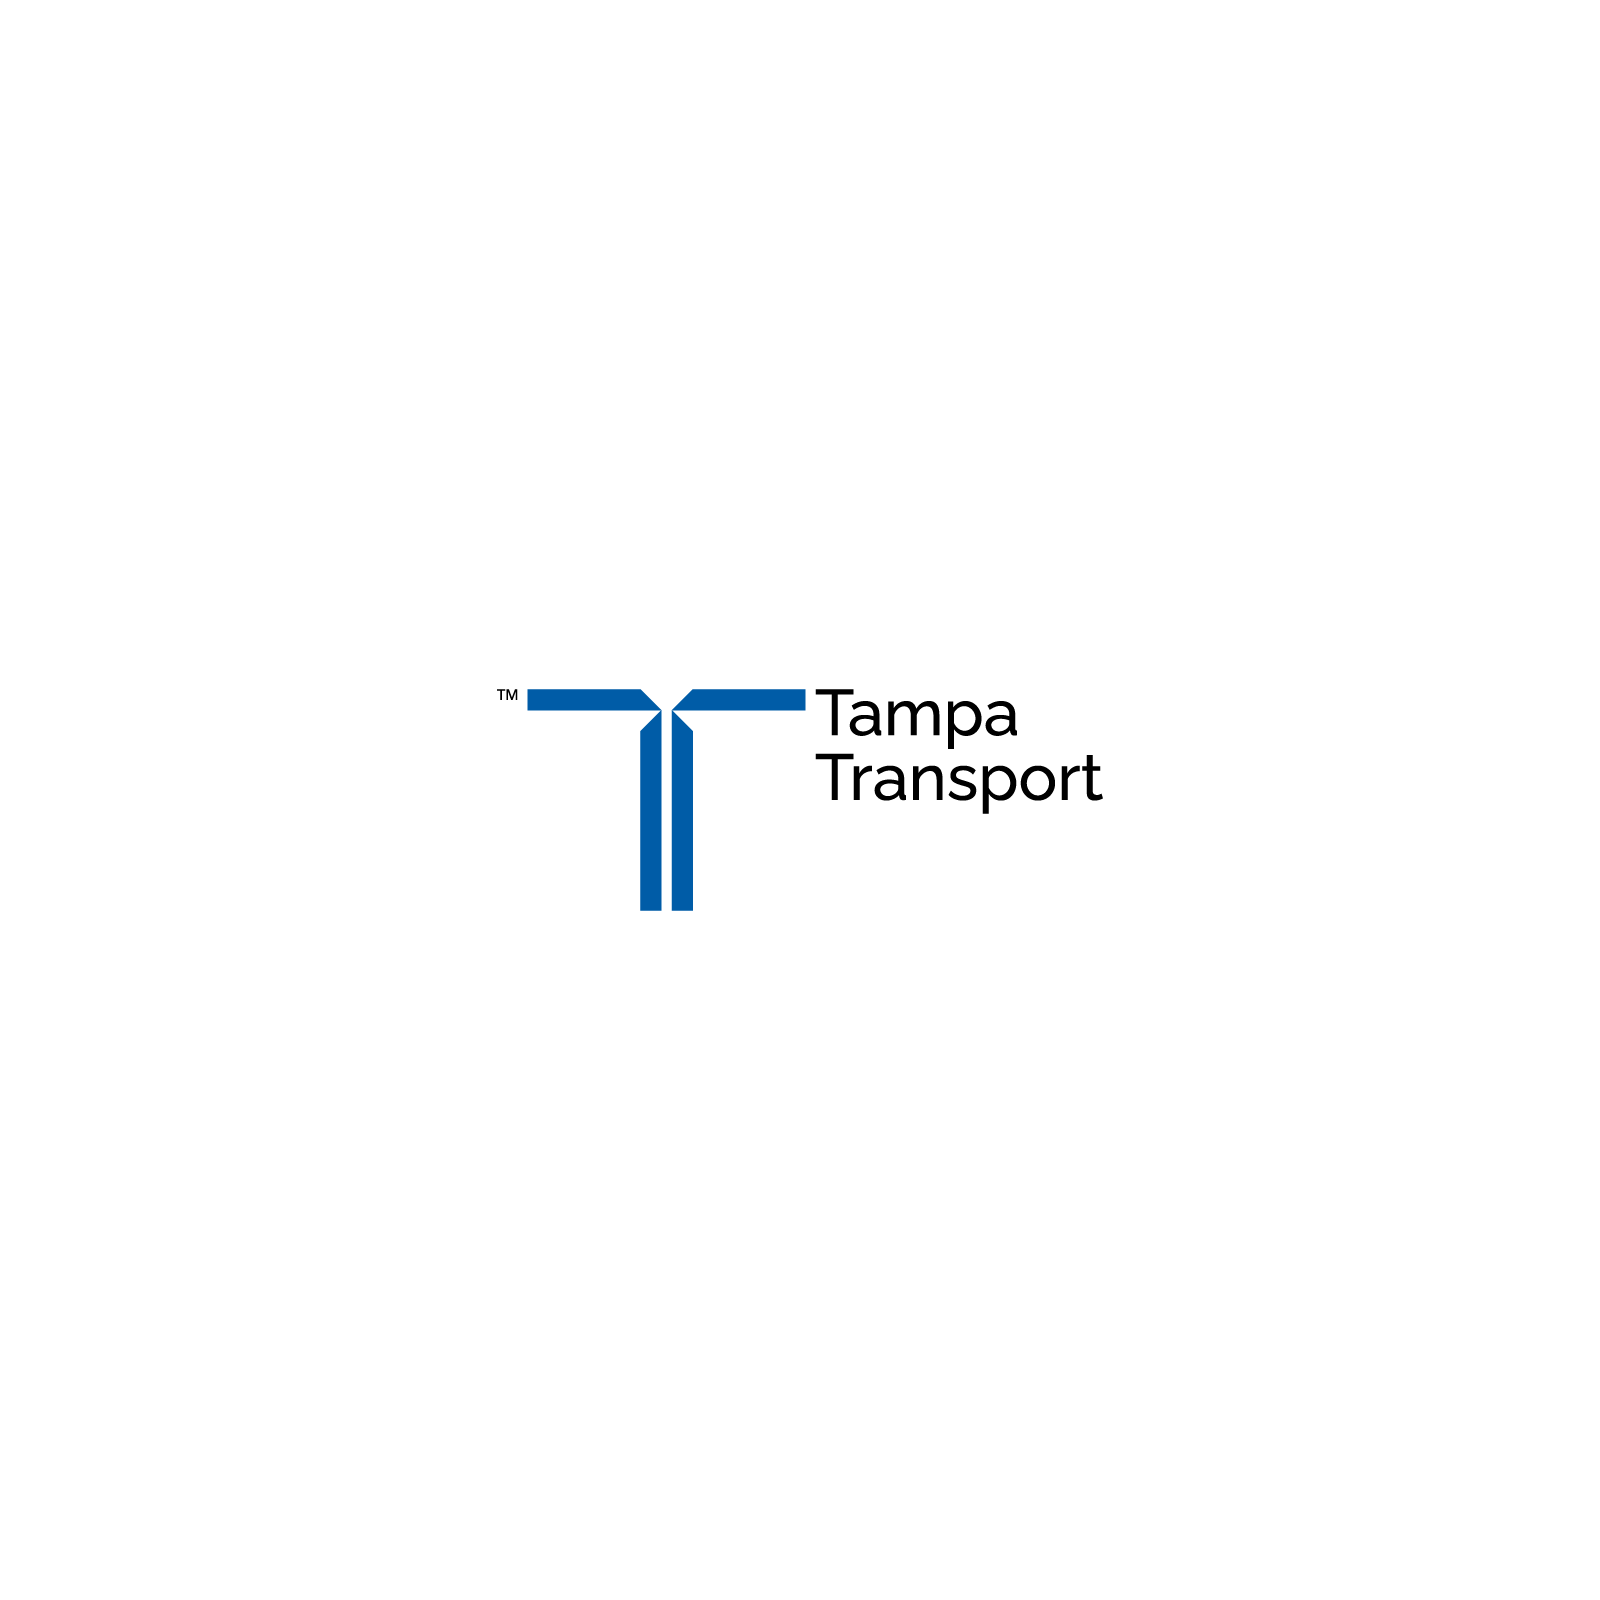 Tampa Transport